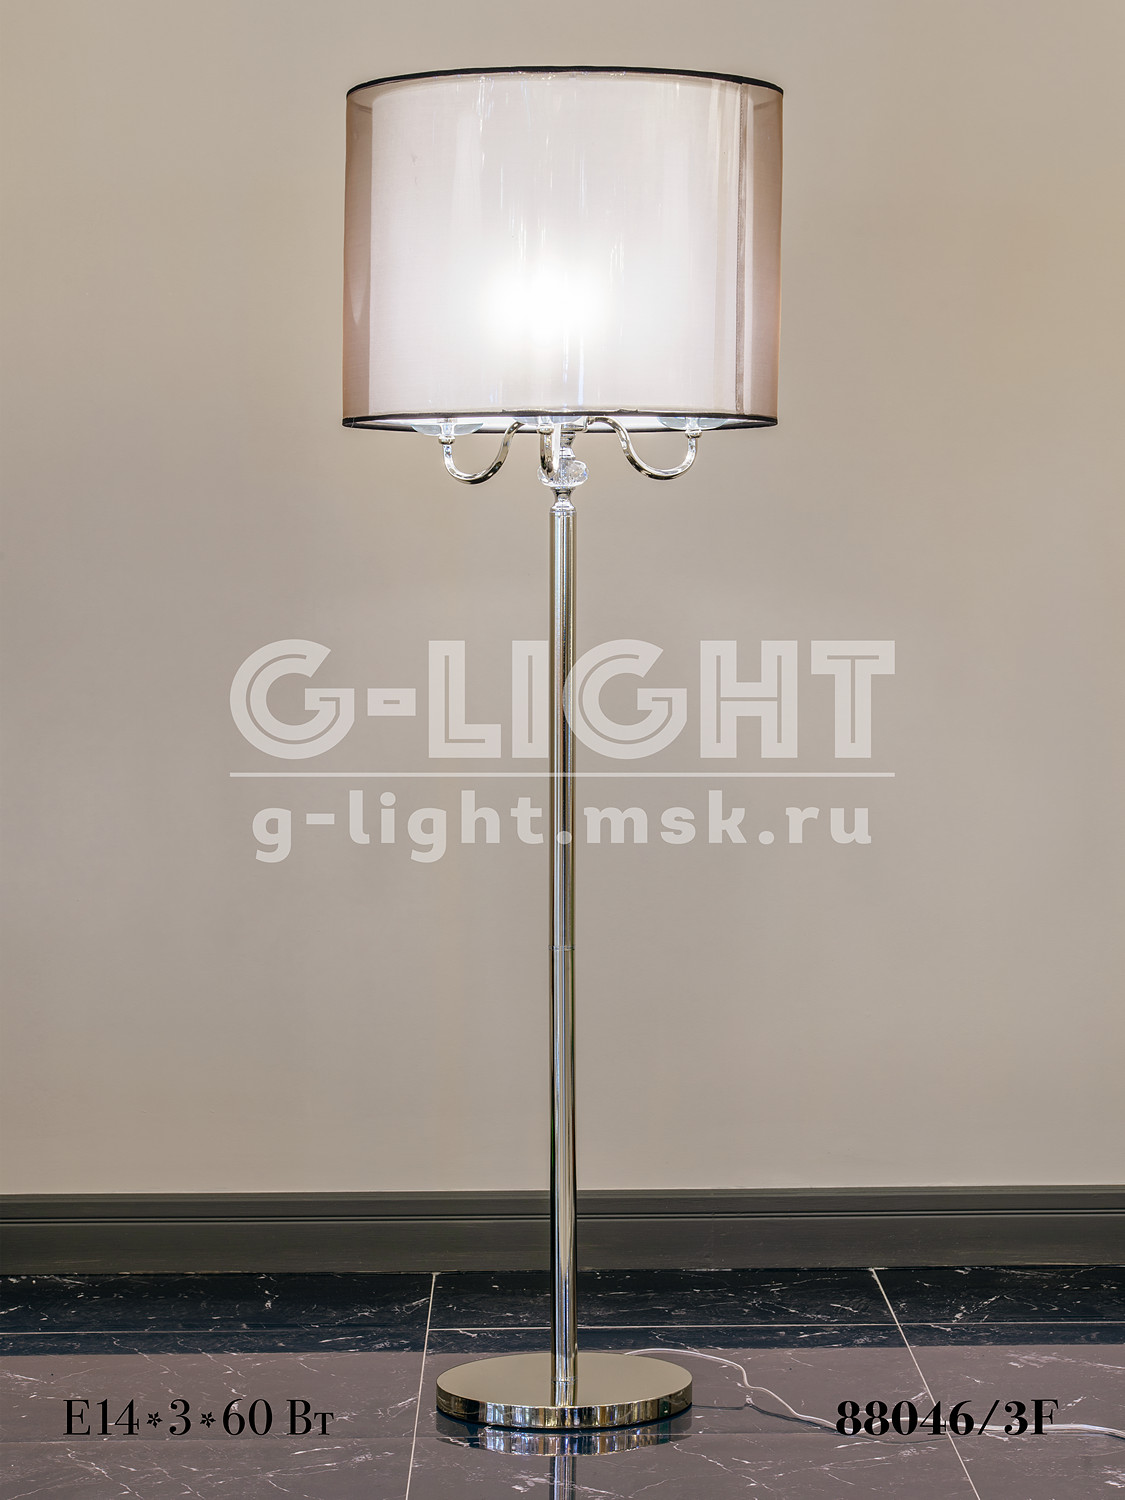 Торшер G-Light 88046/3F - изображение 5